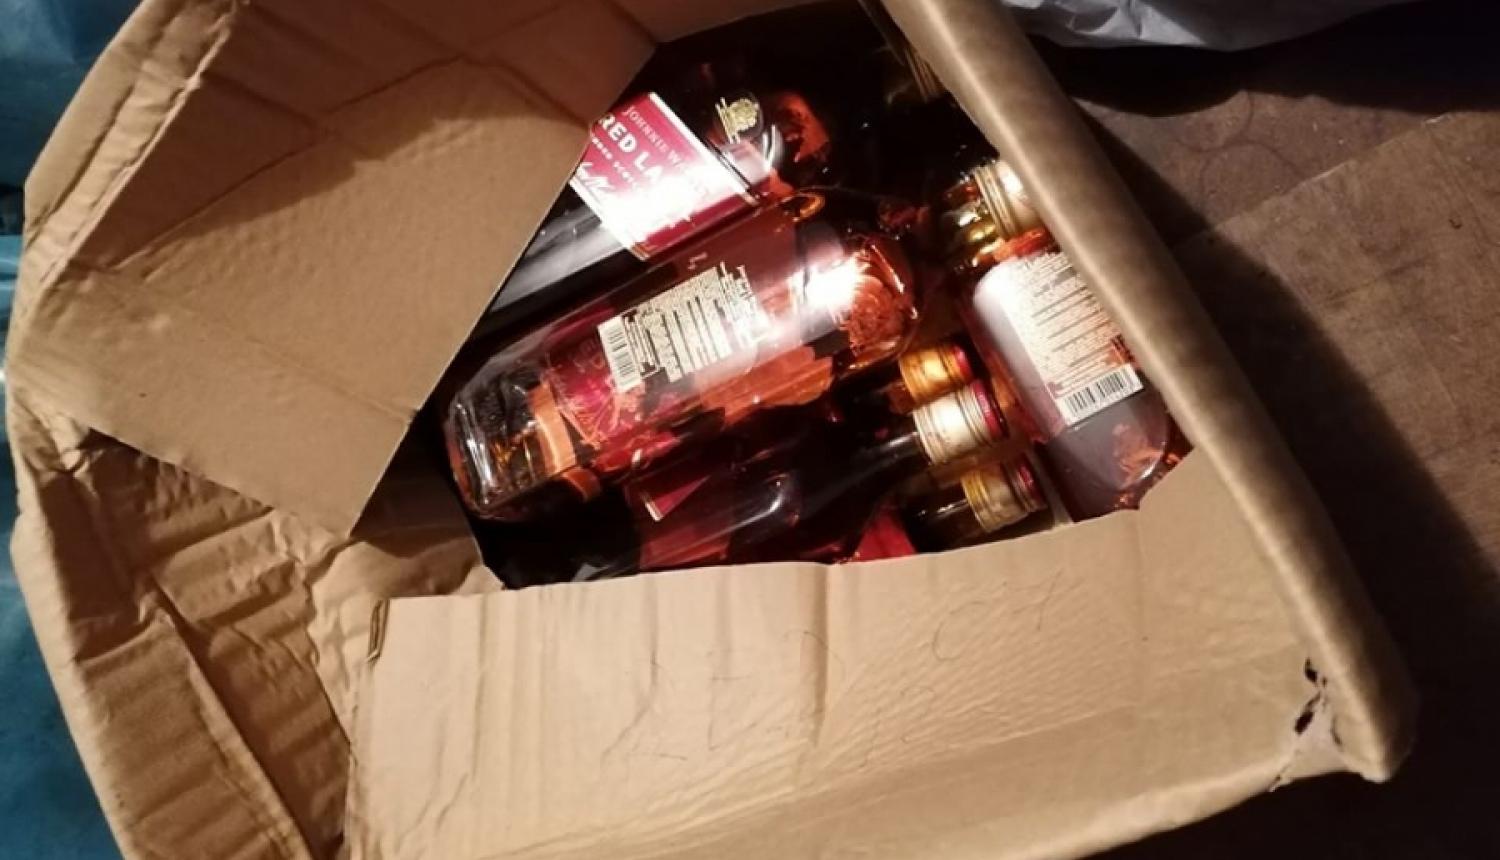 Valsts policija kādā garāžā Rīgā konstatē dārgu nelegālo alkoholu